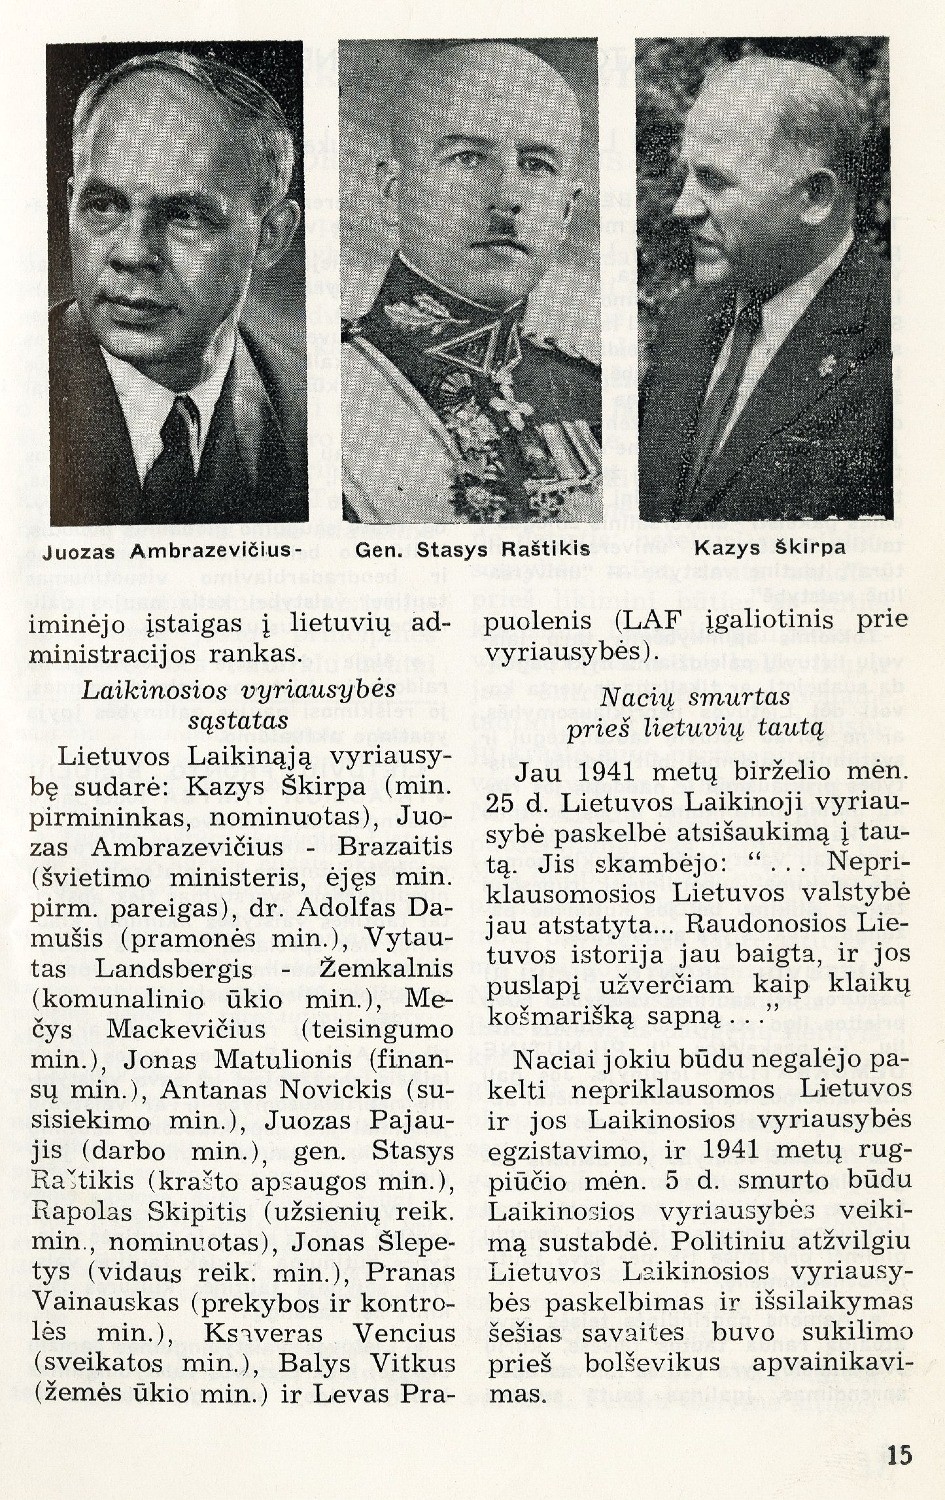 Sukilimas ir Laikinoji vyriausybė // Į laisvę. – 1967, Nr. 40, p. 14–15.